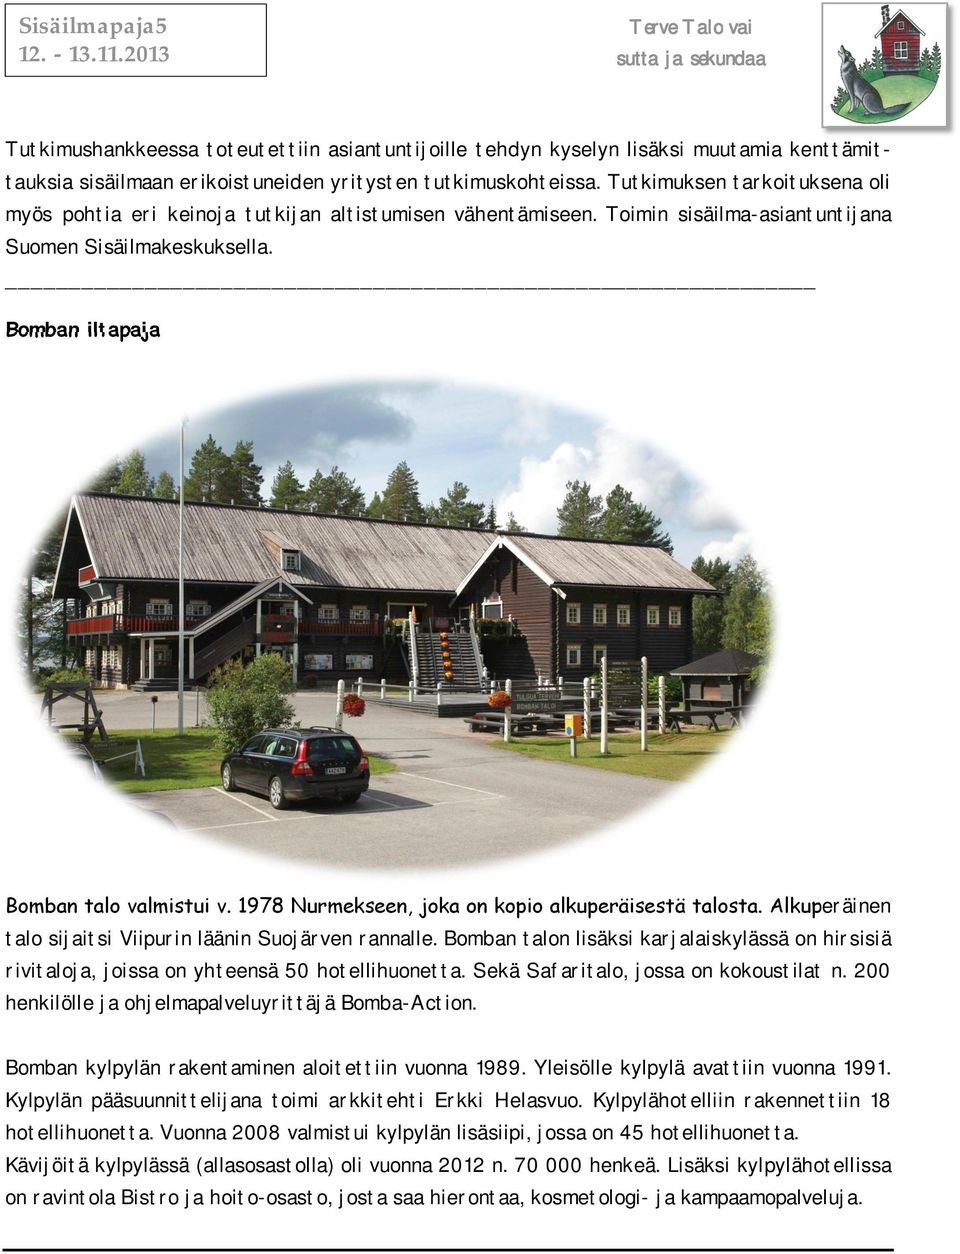 1978 Nurmekseen, joka on kopio alkuperäisestä talosta. Alkuperäinen talo sijaitsi Viipurin läänin Suojärven rannalle.